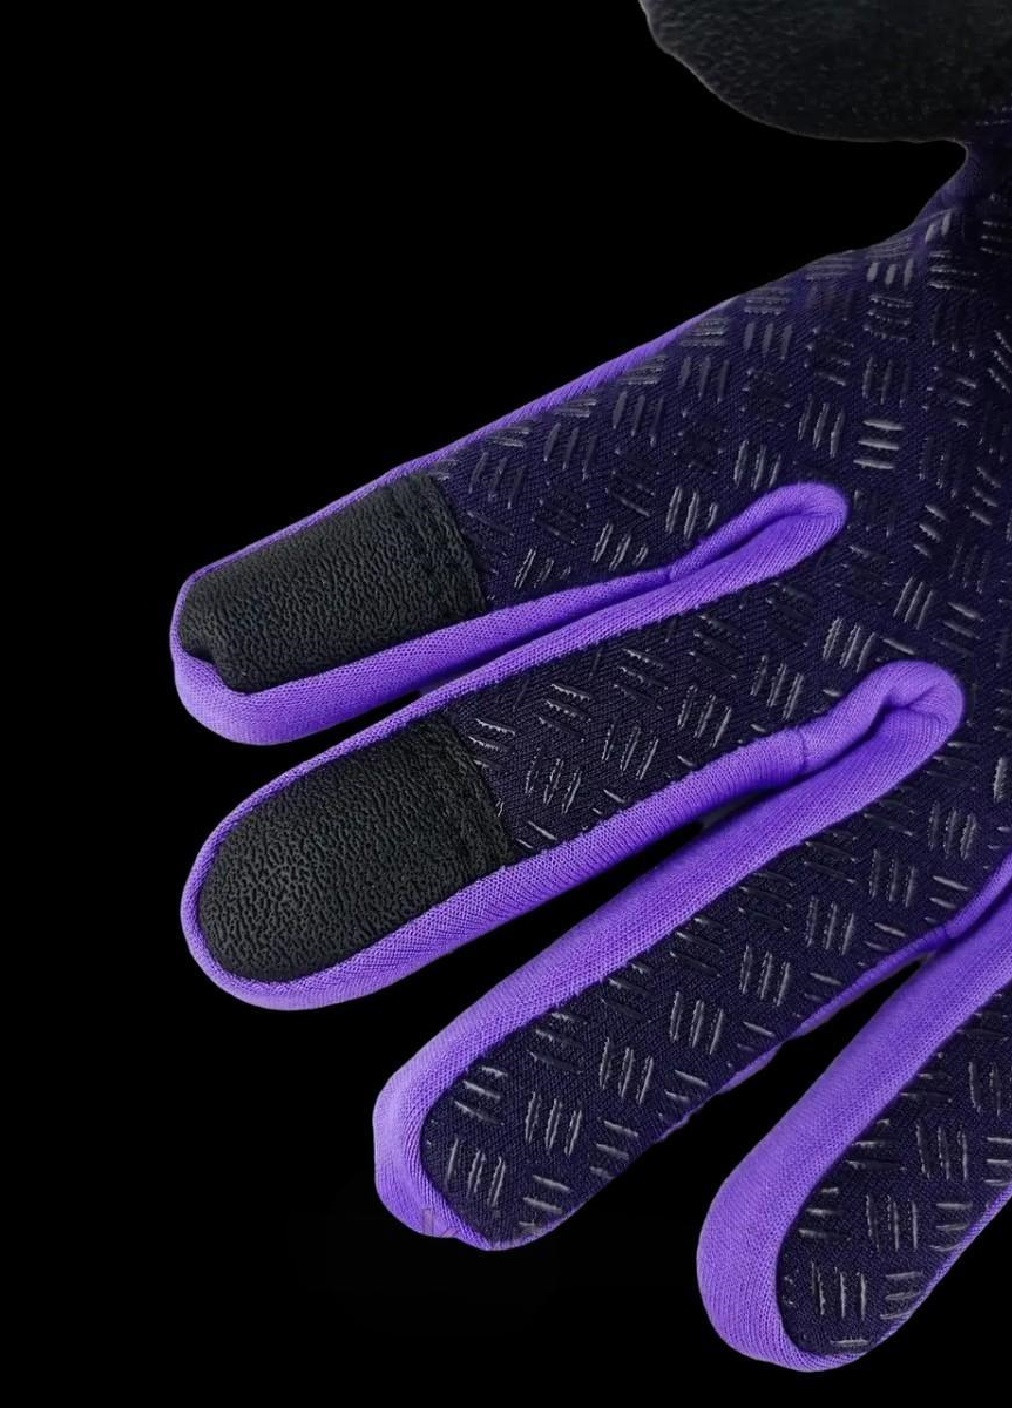 Велоперчатки велосипедные перчатки с водоотталкивающим сенсорным покрытием спандекс флис (476030-Prob) Фиолетовые L Unbranded (275863530)